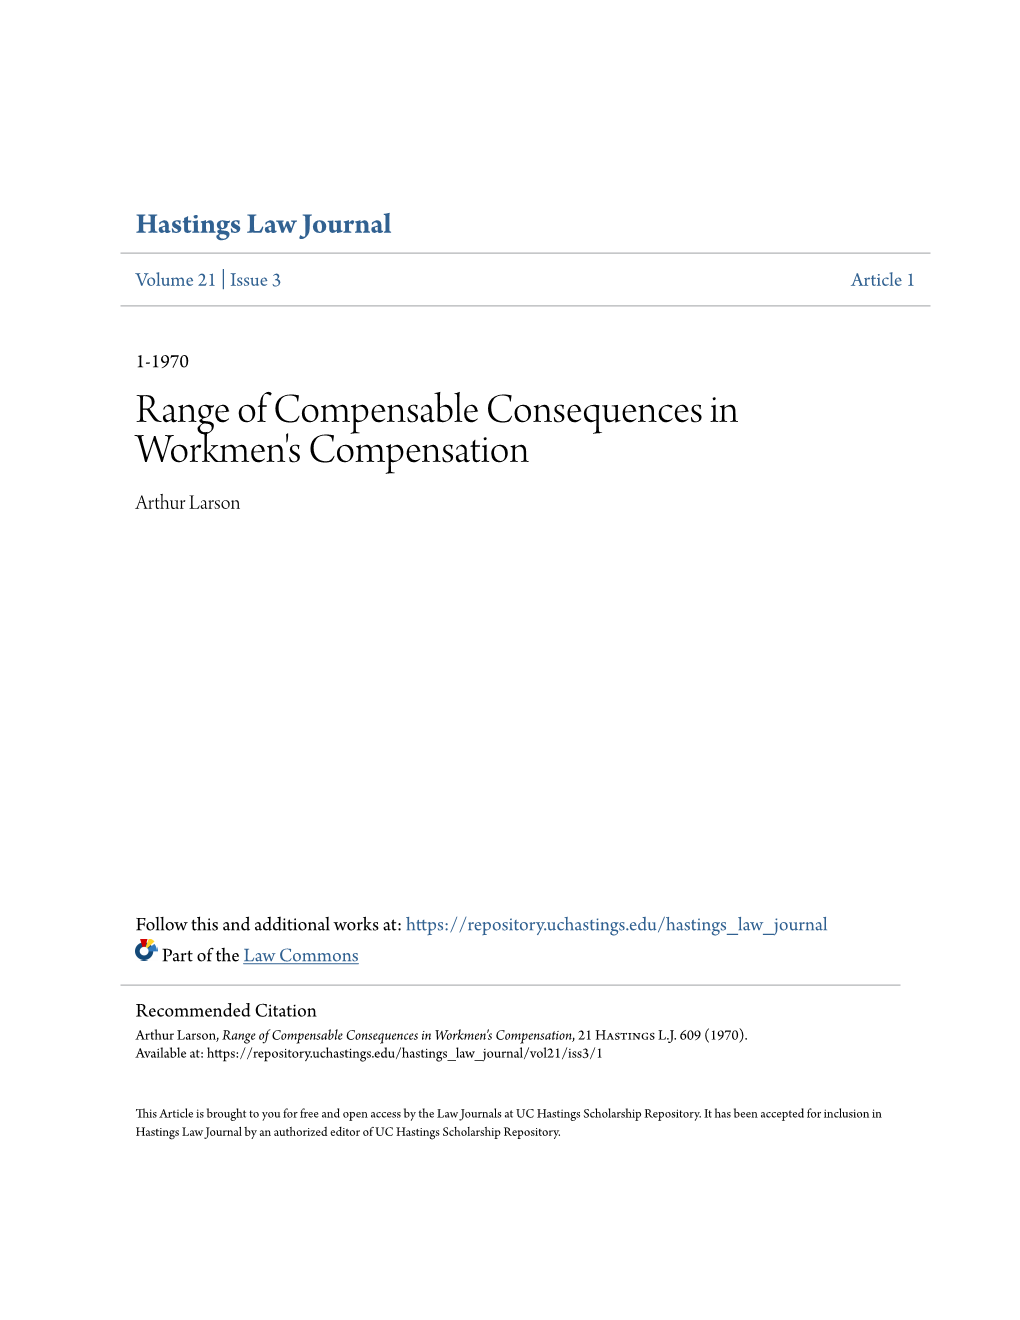 Range of Compensable Consequences in Workmen's Compensation Arthur Larson